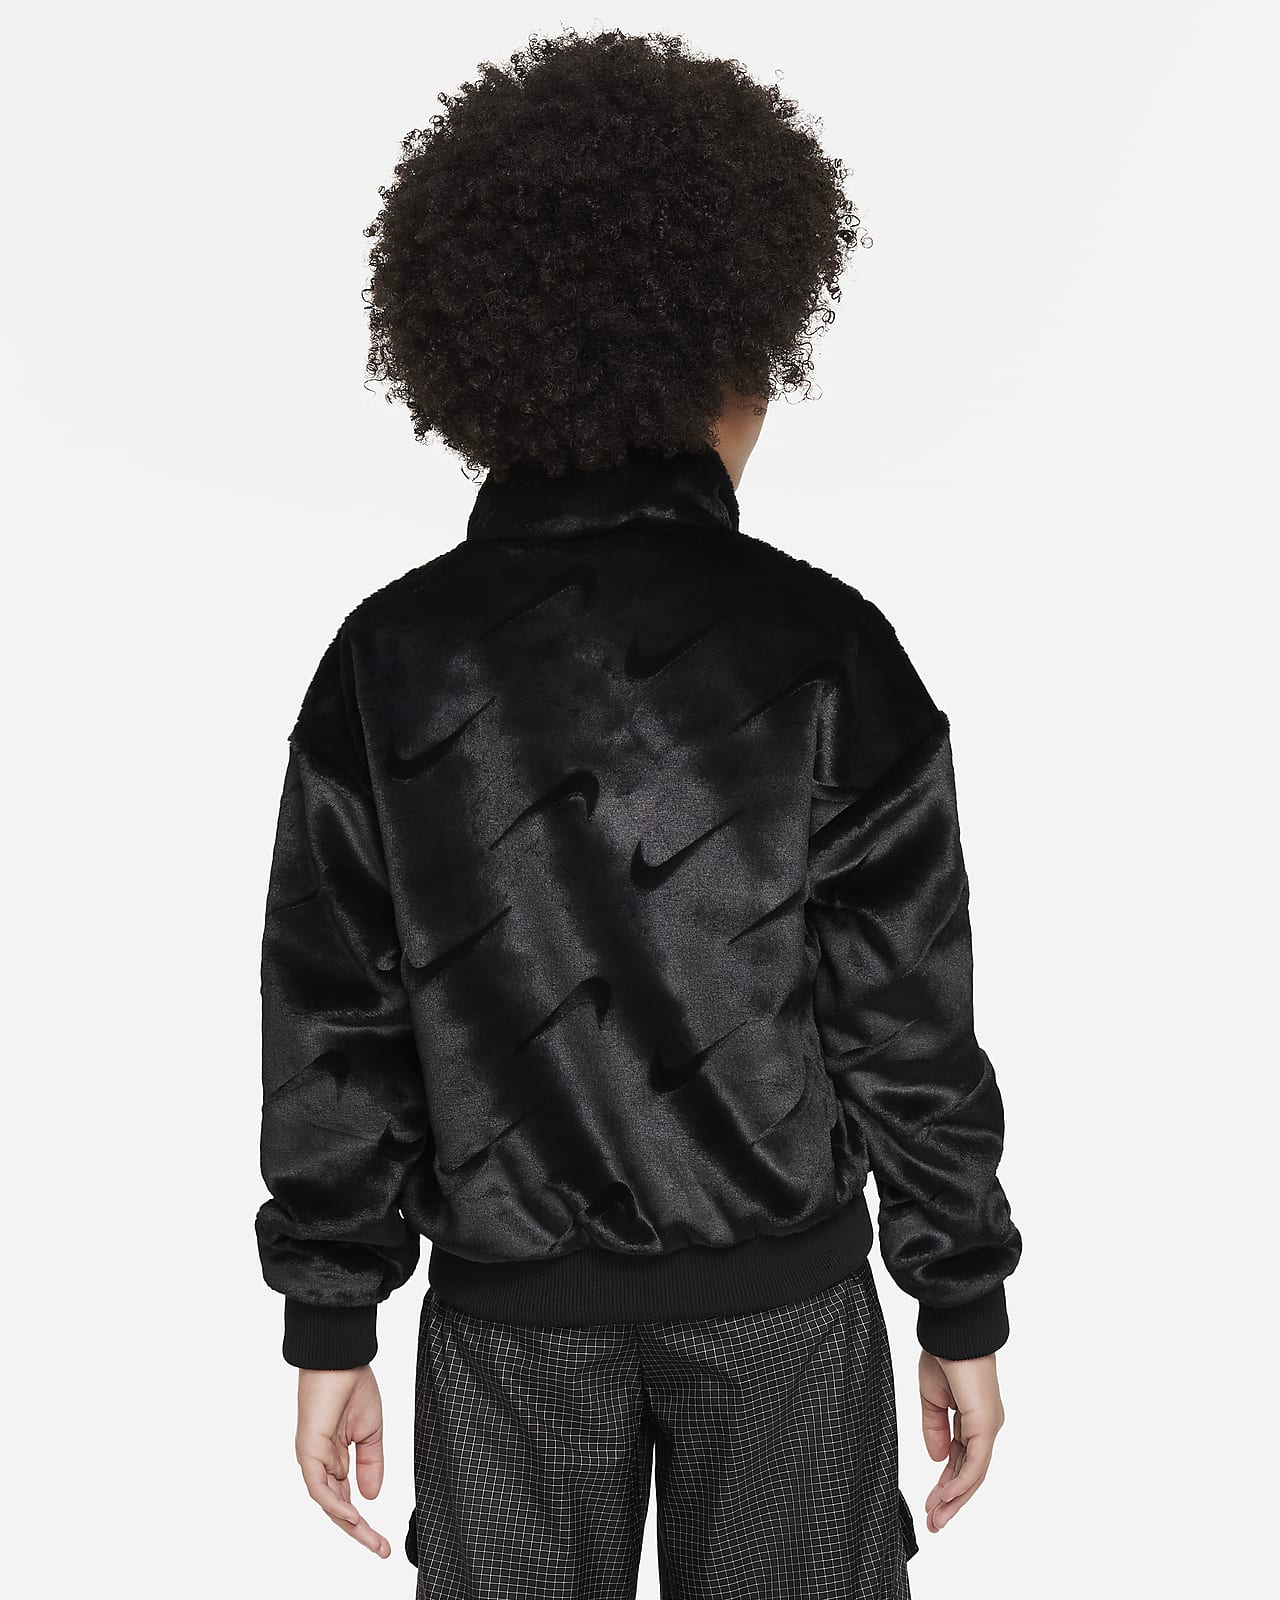 Nike Sportswear Older Kids' (Girls') Jacket. Nike LU